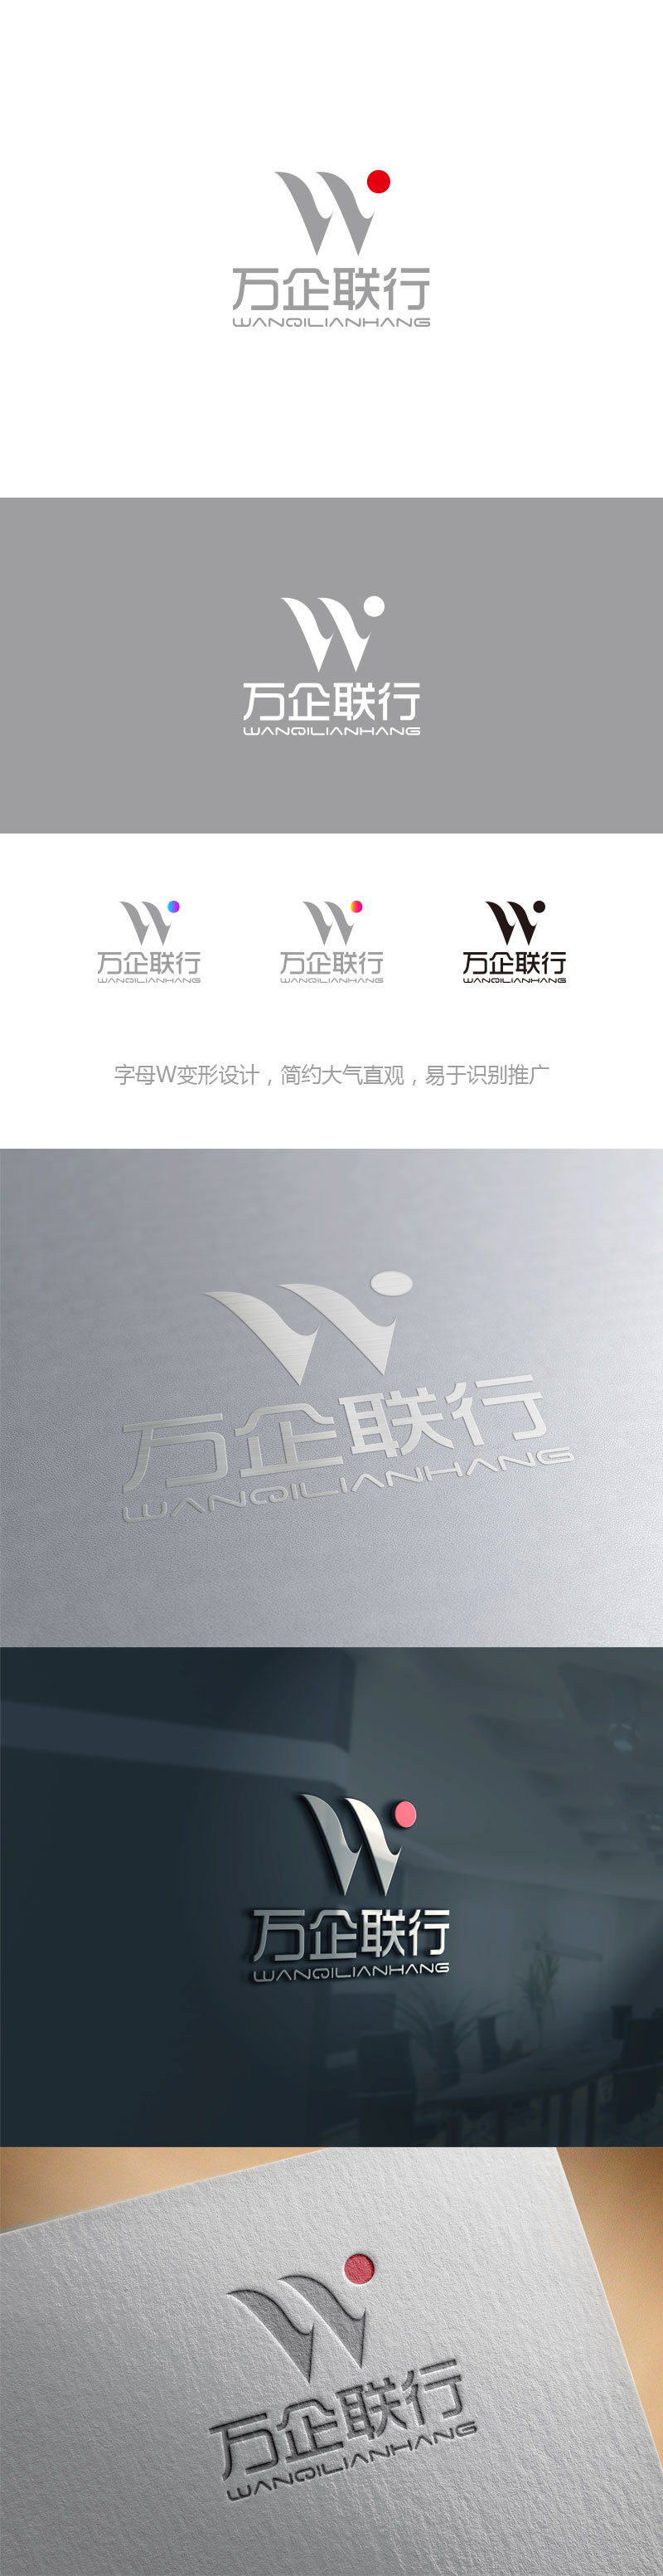 孙金泽的万企联行物业服务有限公司logo设计